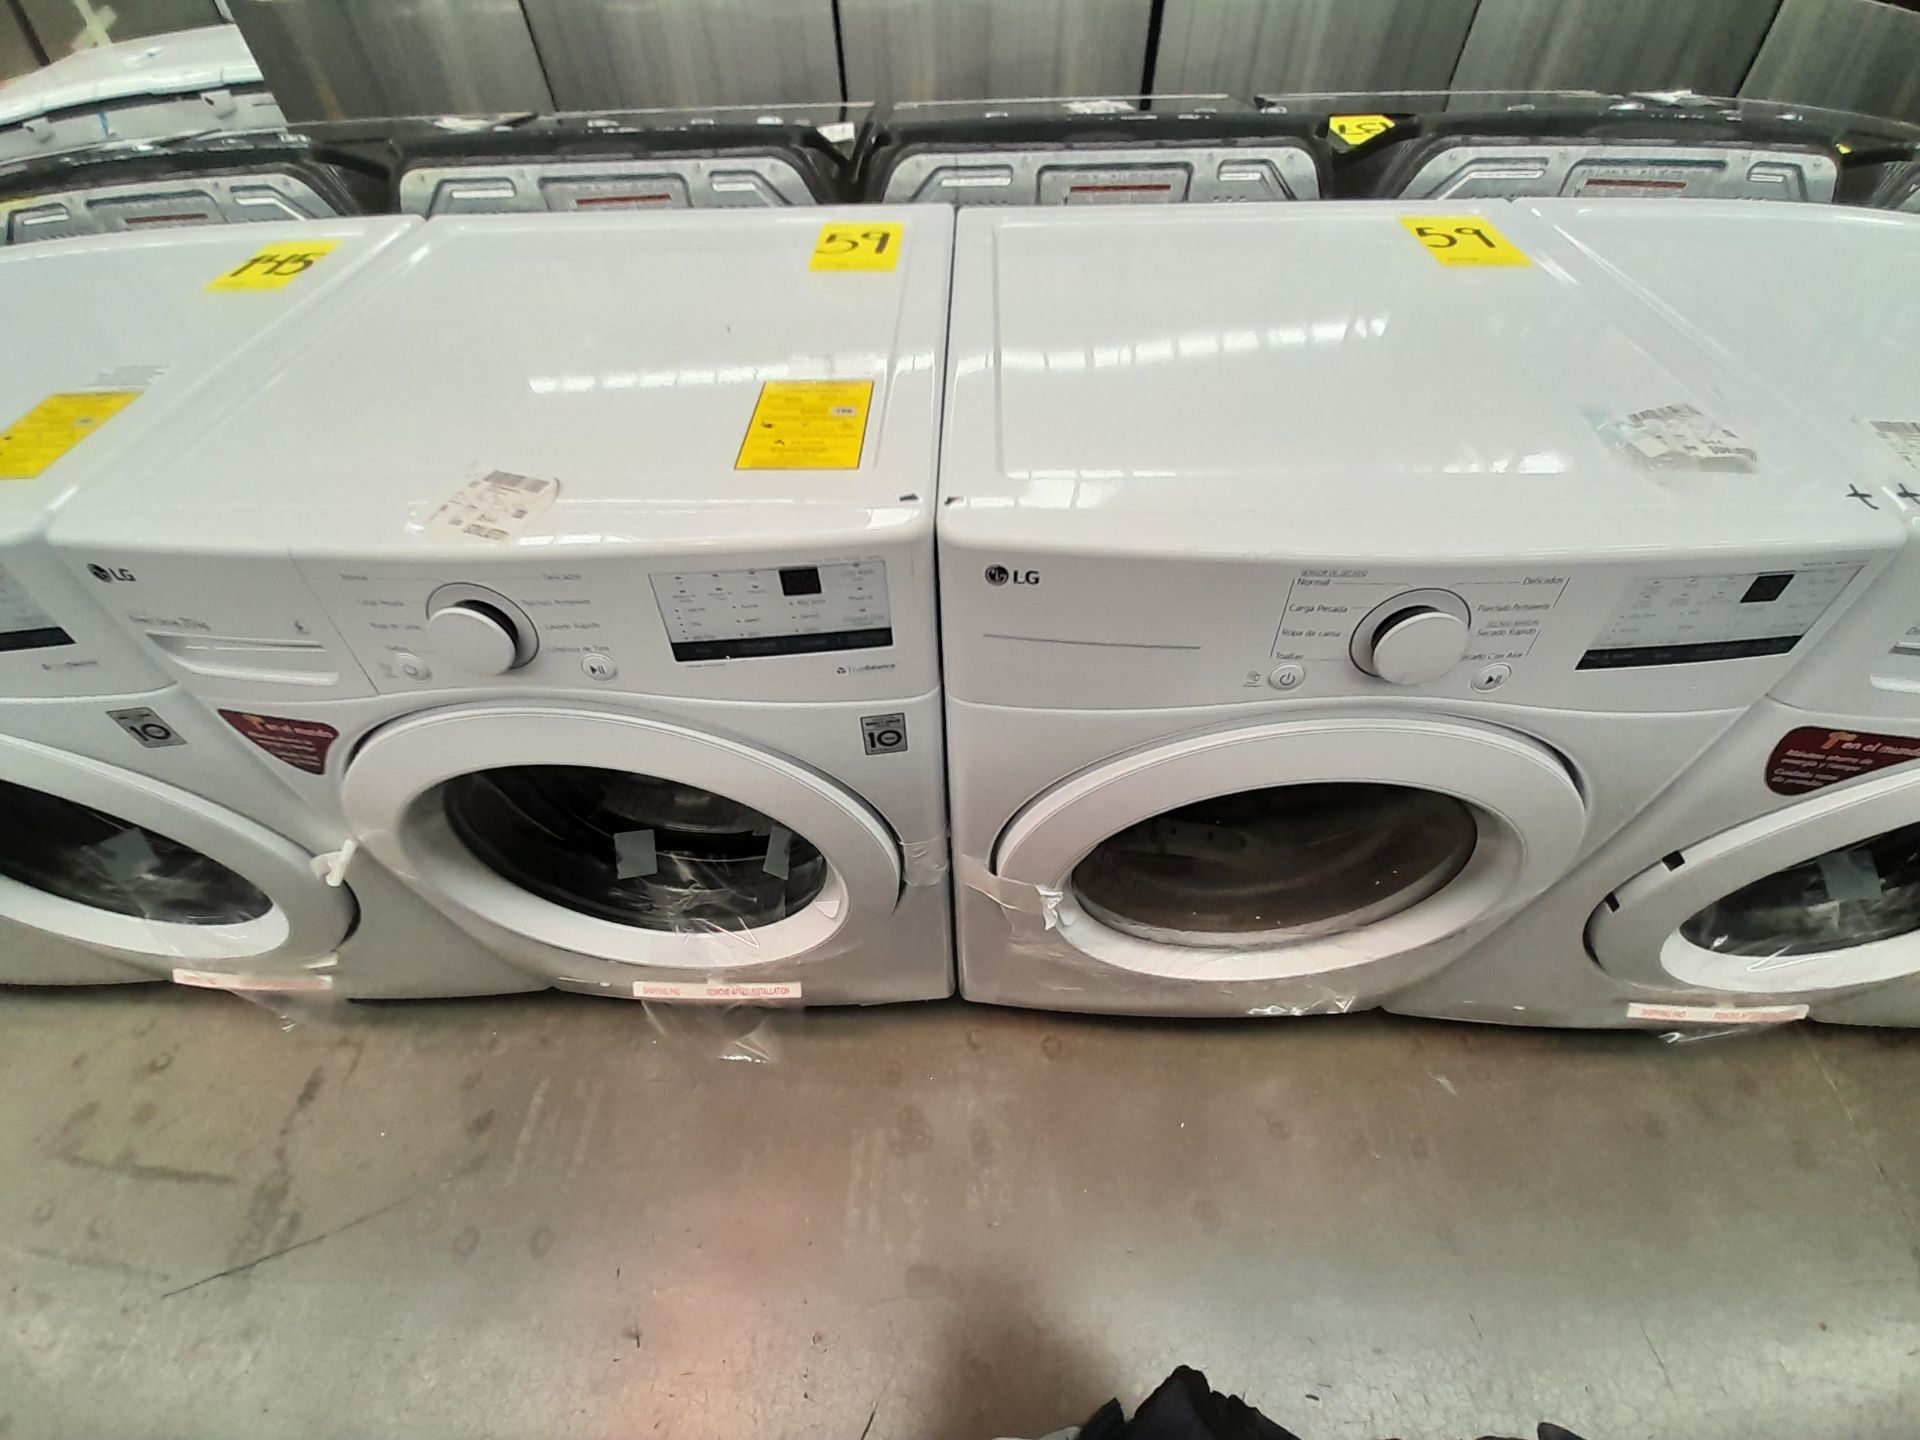 (Nuevo) Lote de 1 lavadora y 1 secadora contiene: 1 lavadora de 20 KG, Marca LG, Modelo WN20WV26W,